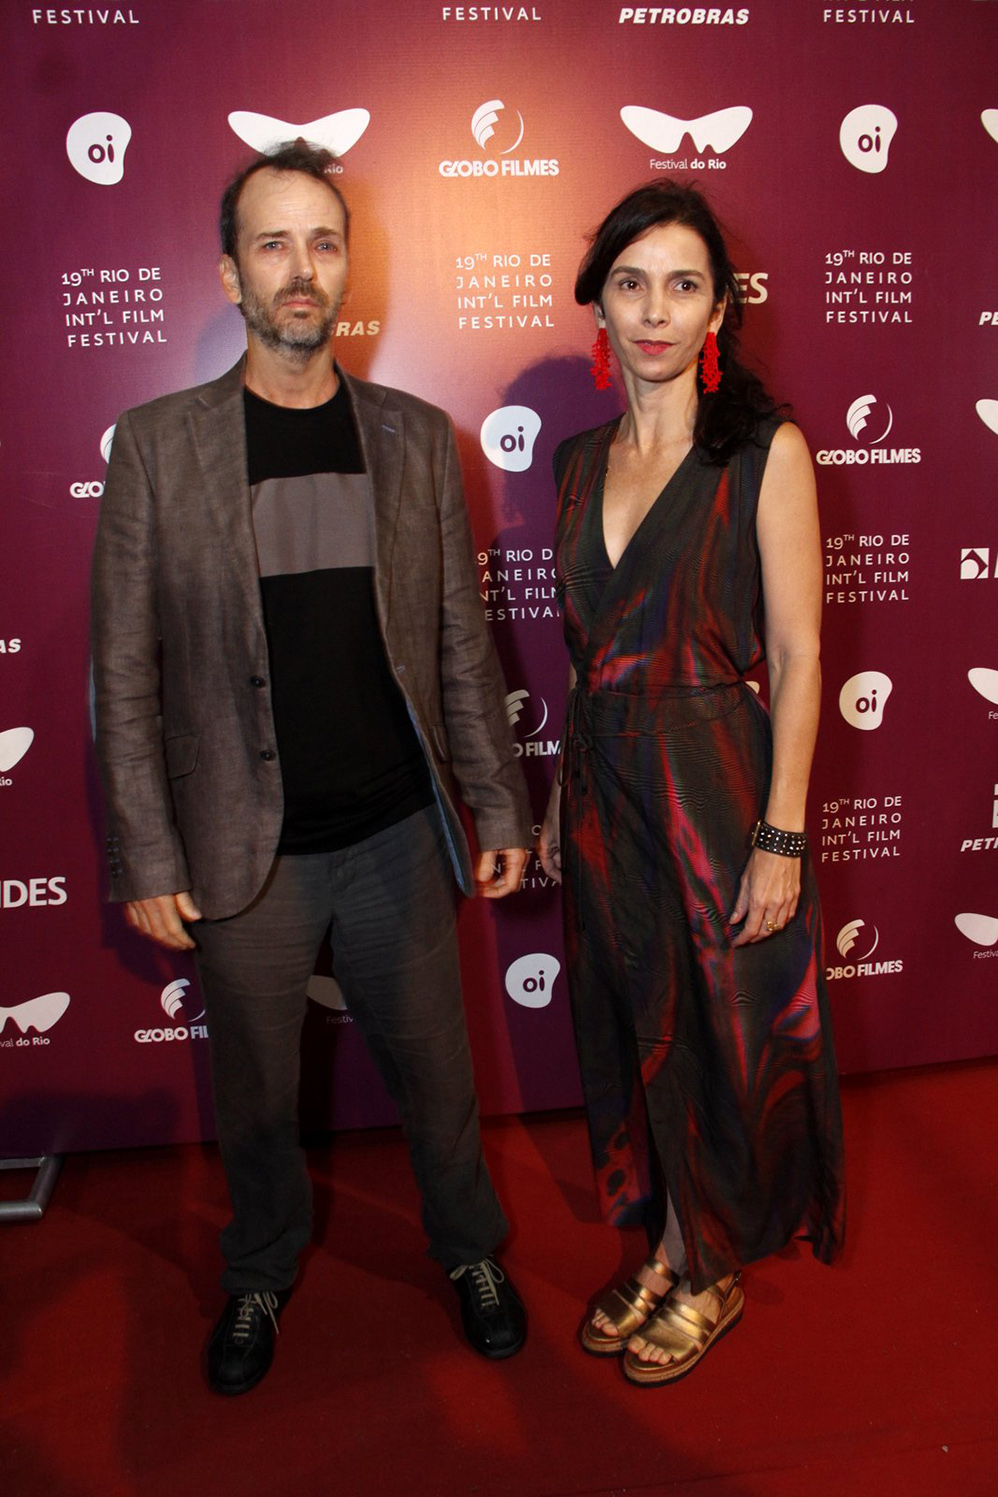 Premiação do Festival de Cinema do Rio reúne famosos